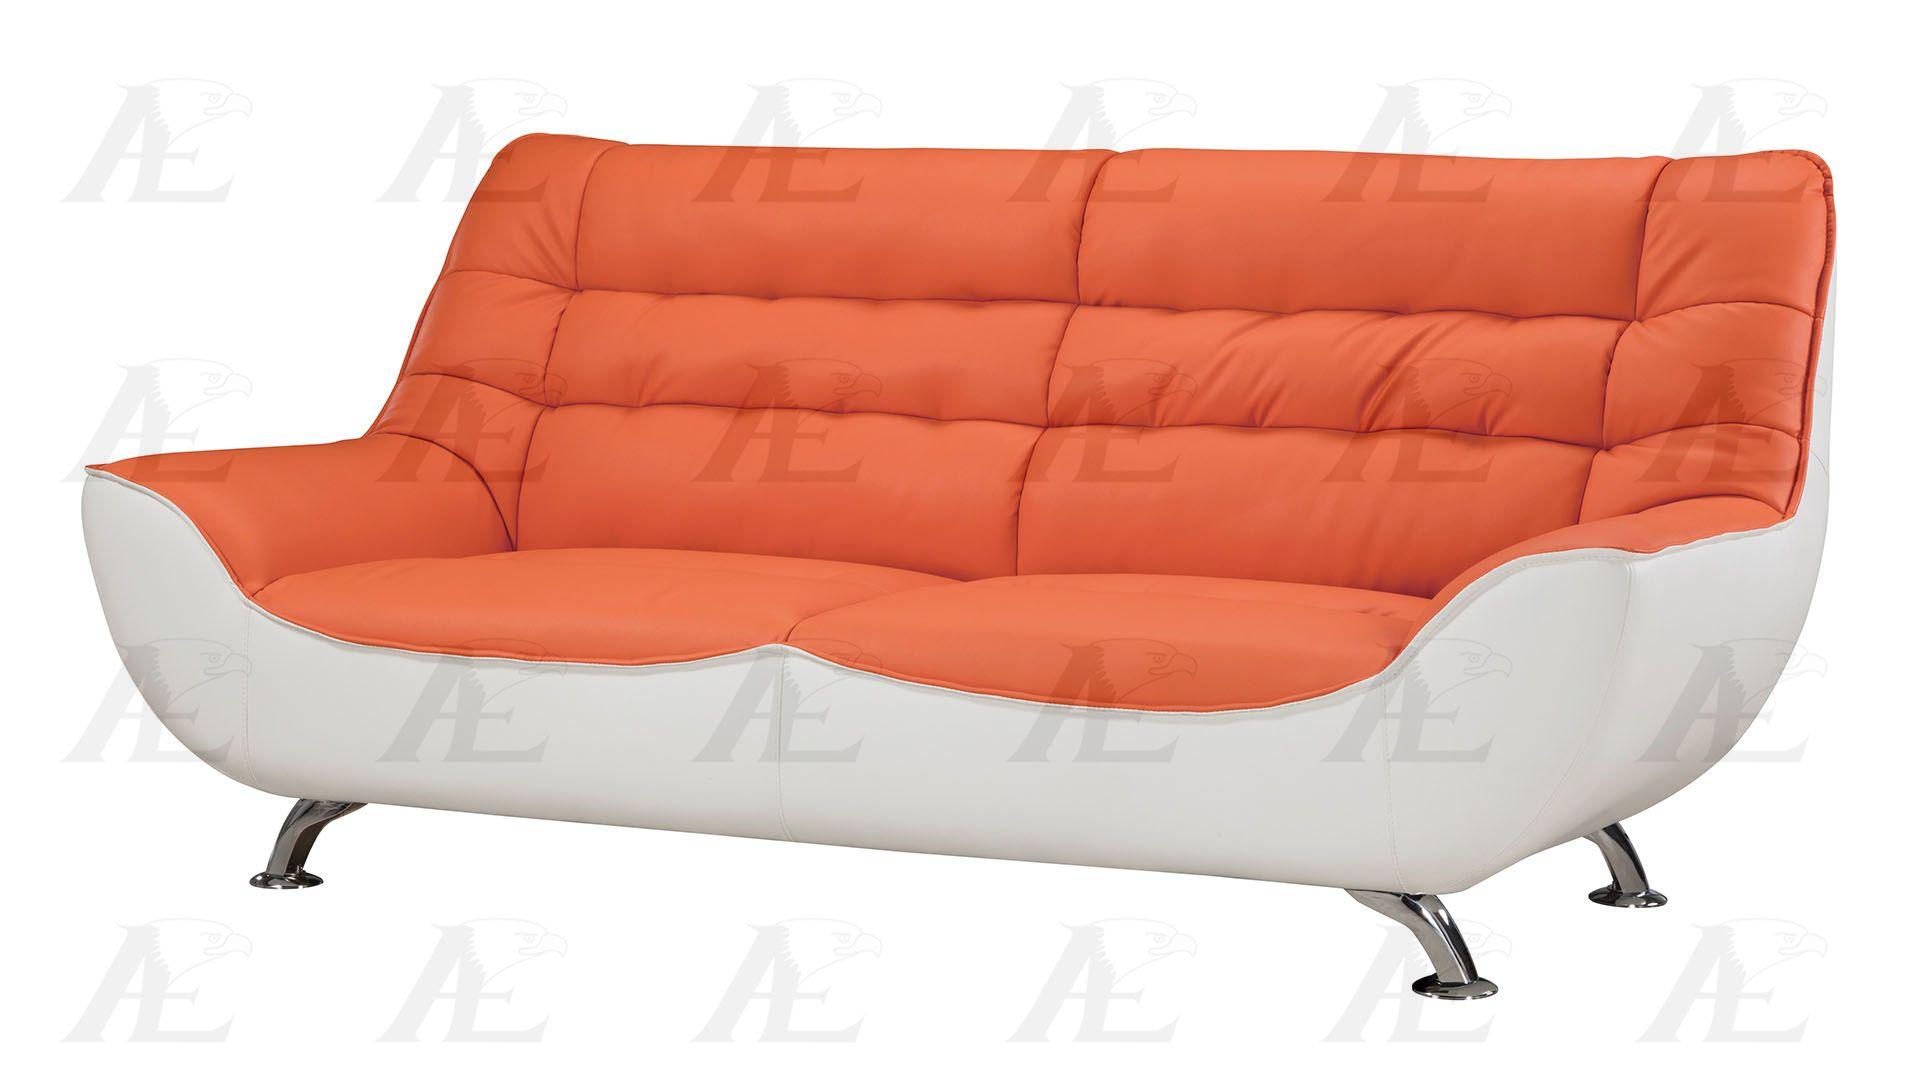 American Eagle Furniture AE612-ORG.W Sofa